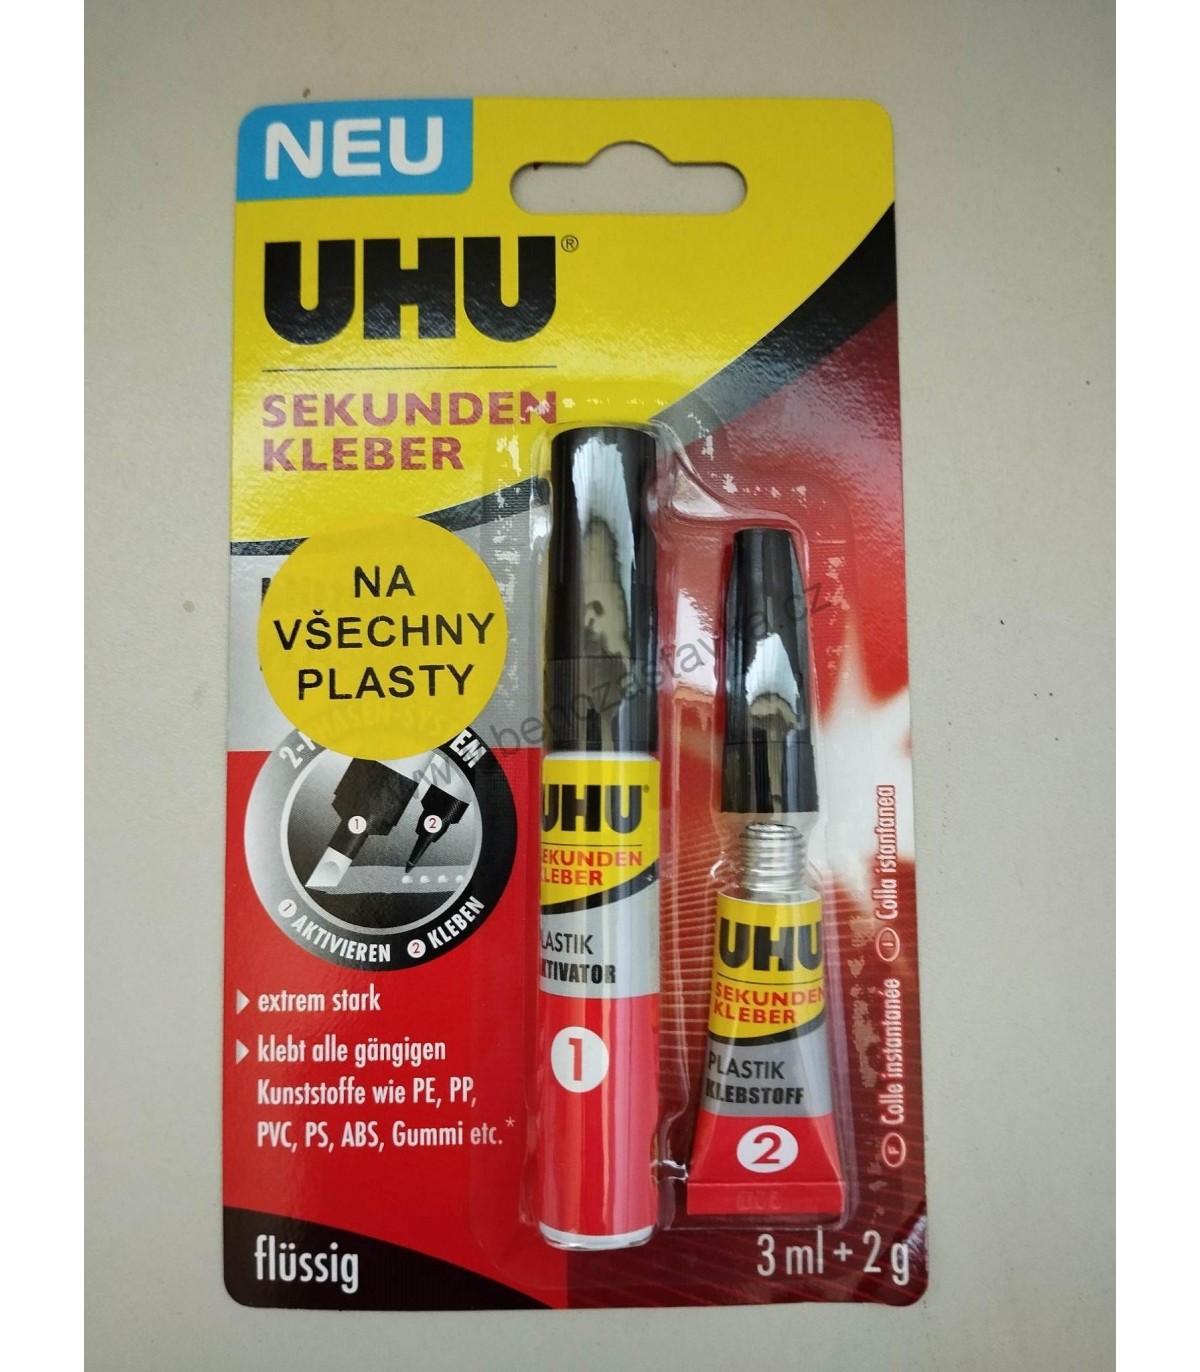 UHU  Super glue